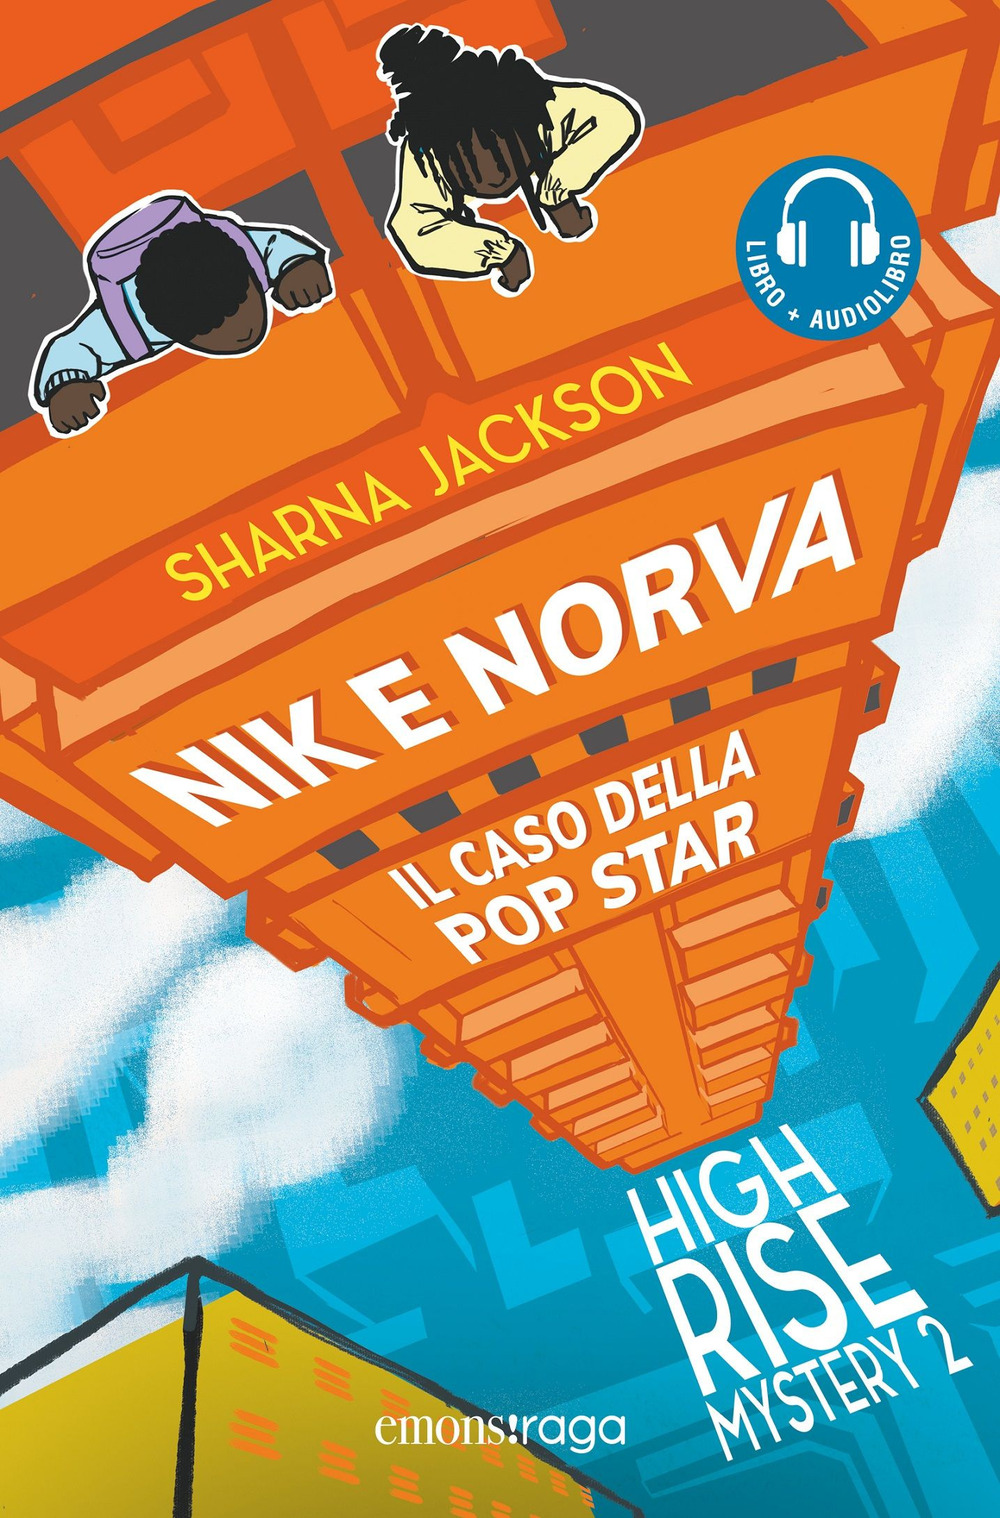 Nik e Norva. Il caso della pop star. High rise mystery. Con audiolibro. Vol. 2